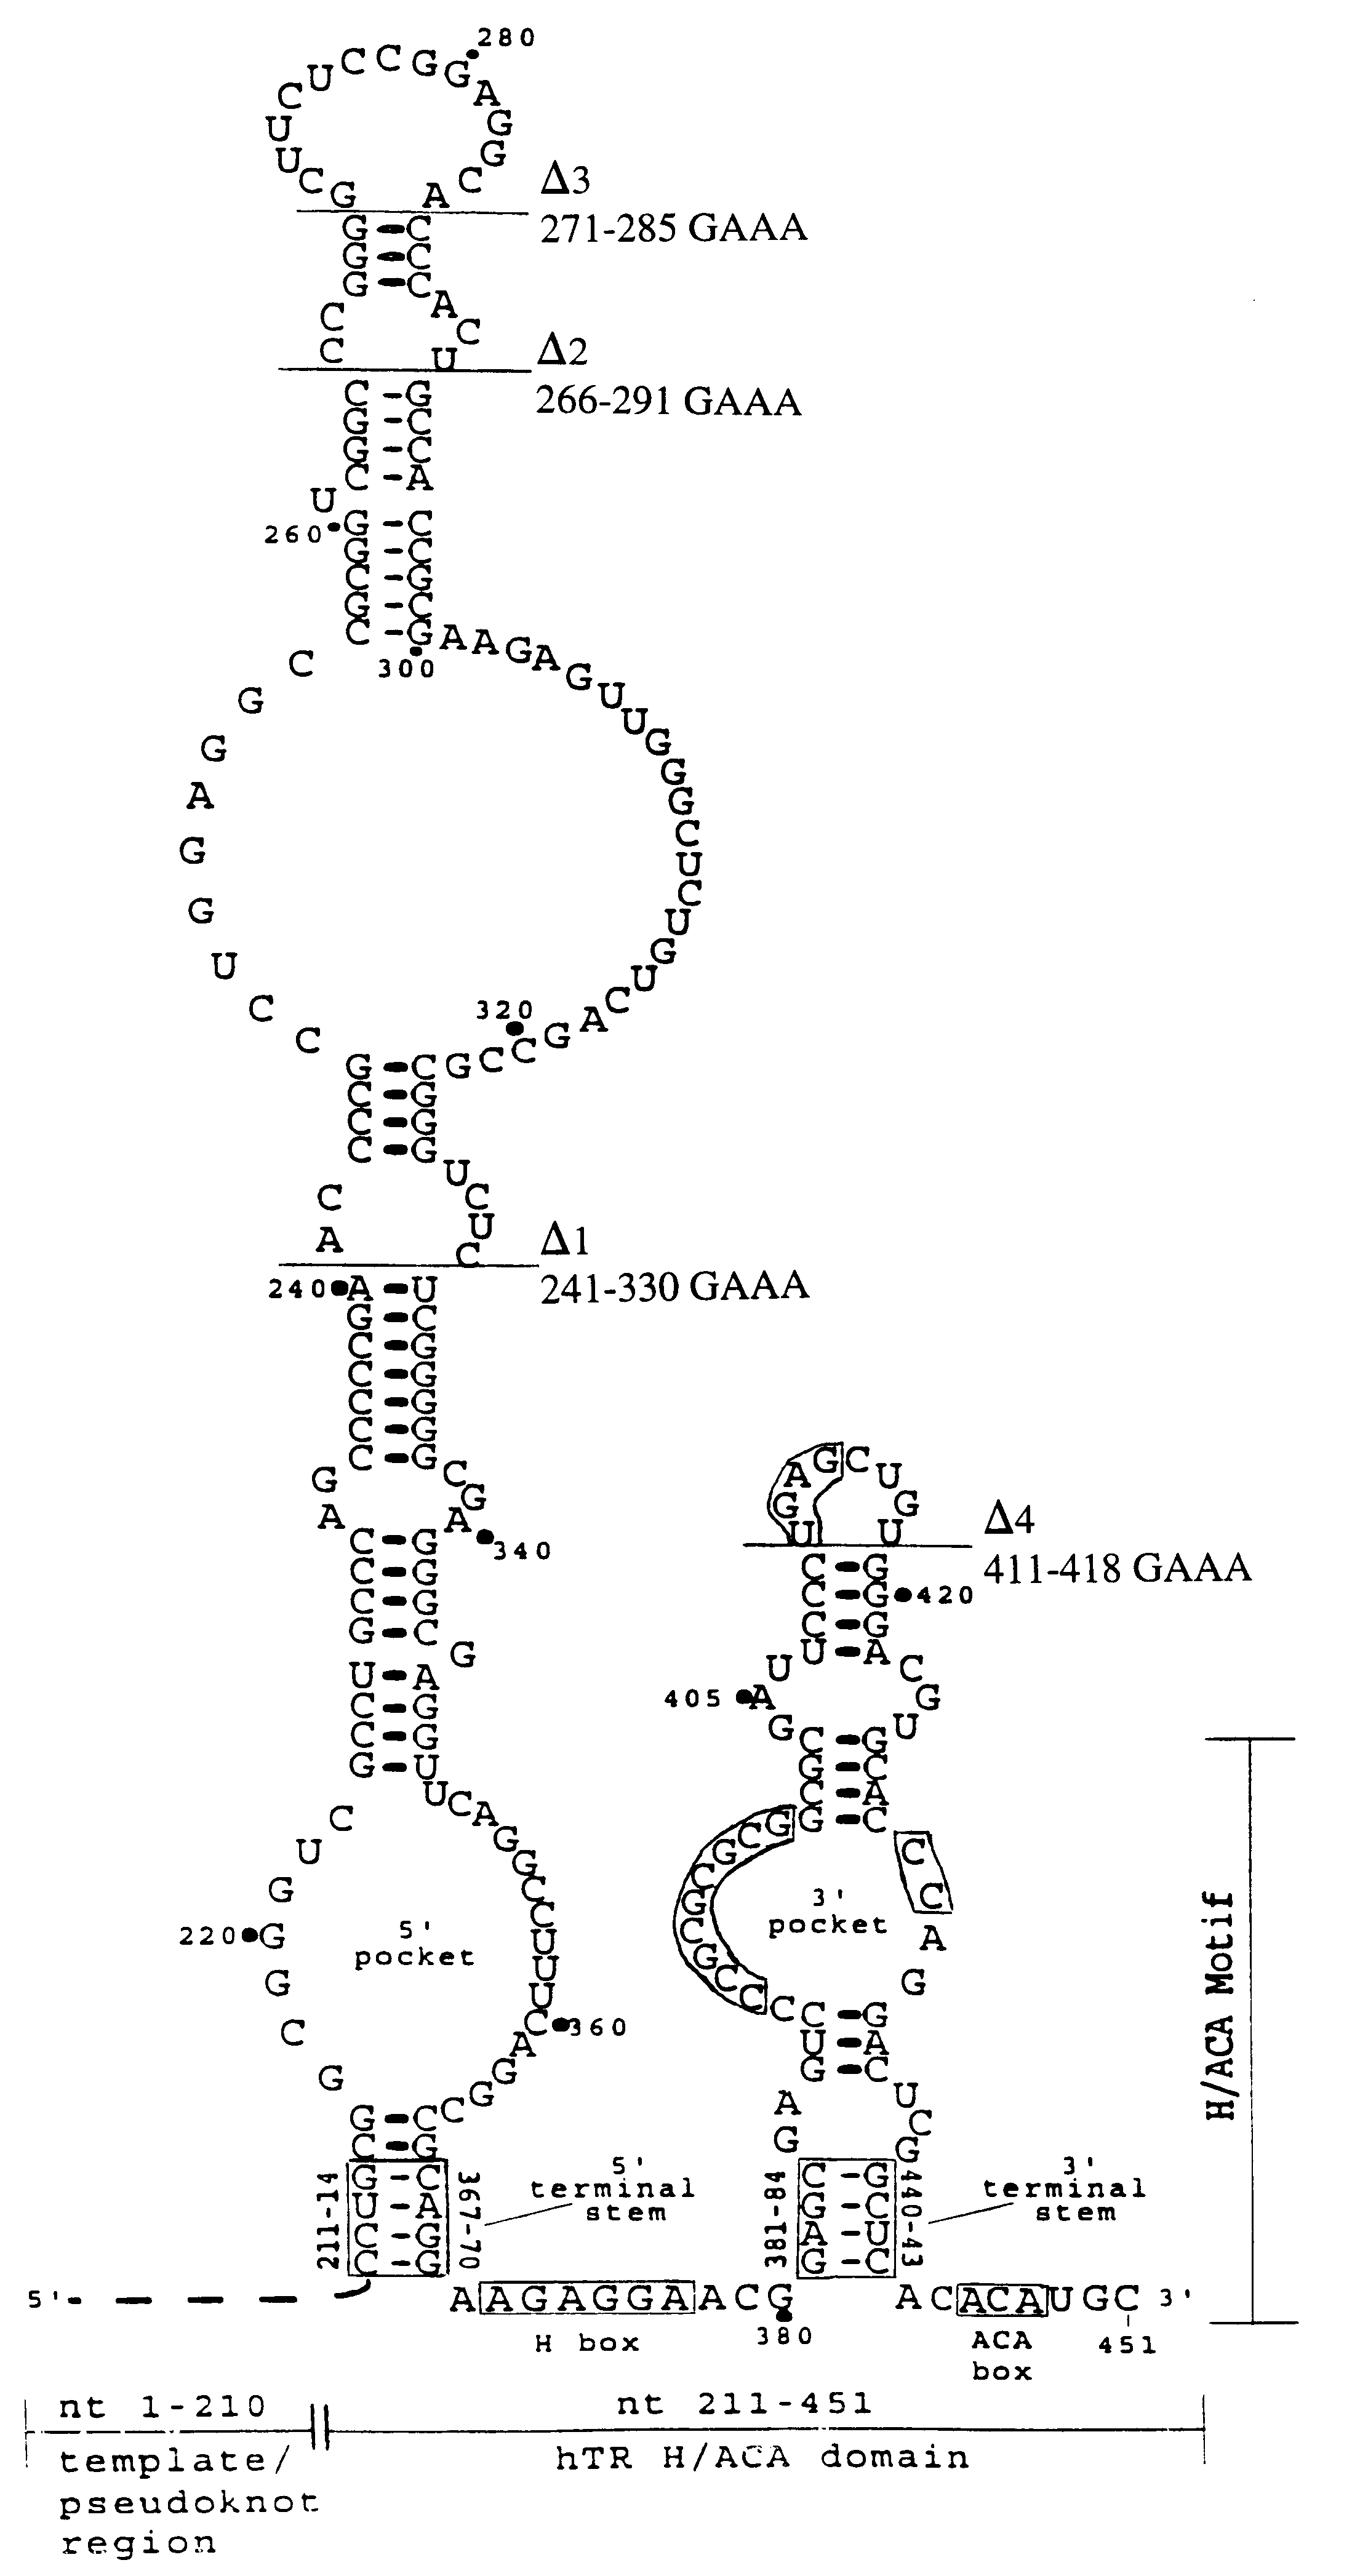 Human telomerase RNA elements